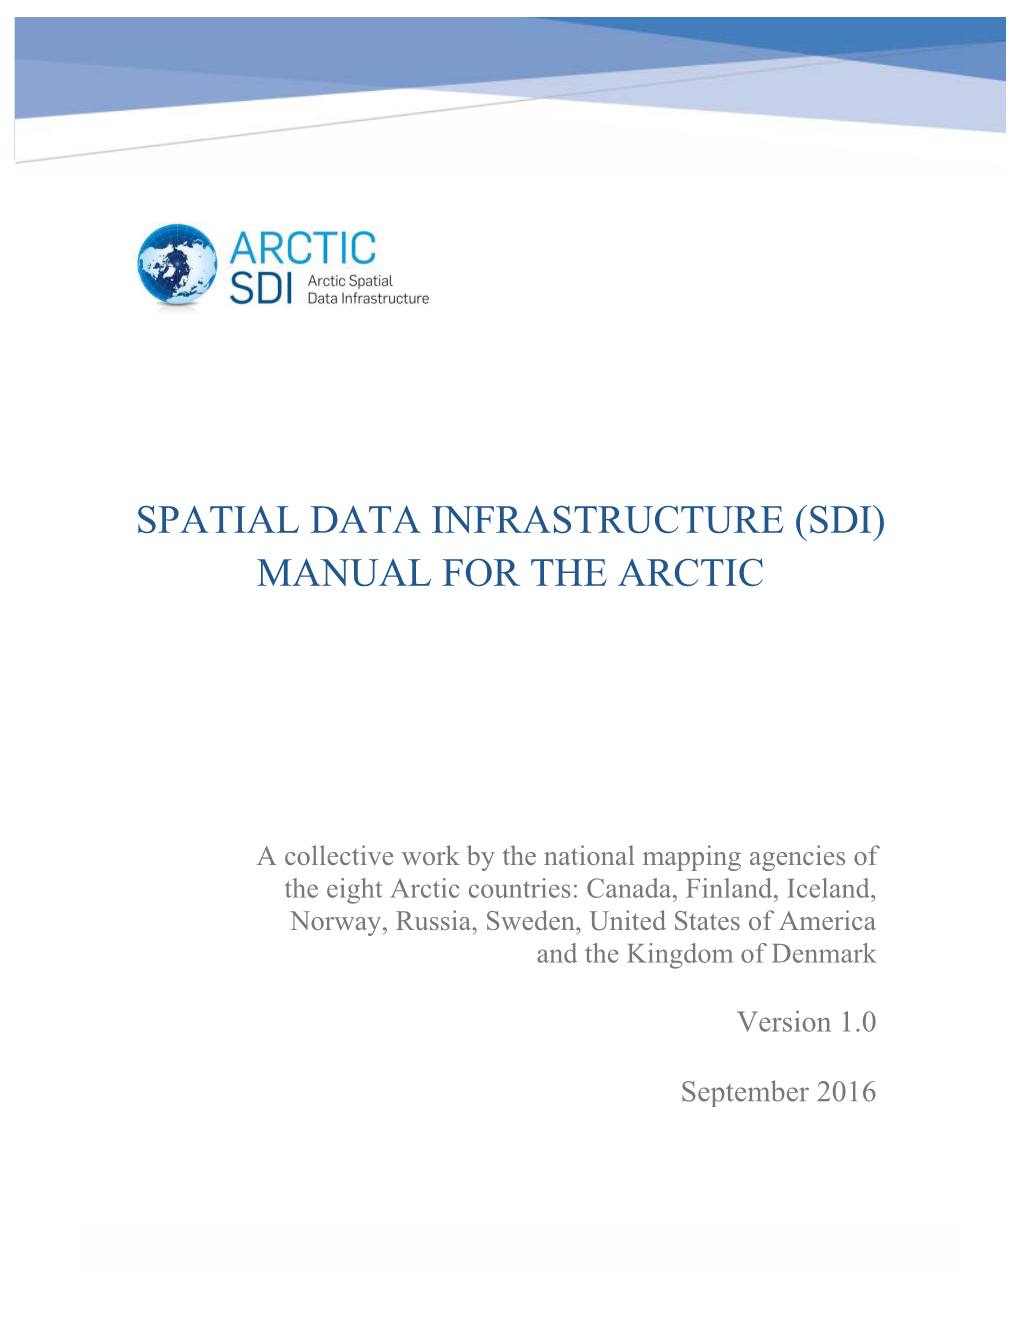 SDI Manual for the Arctic I